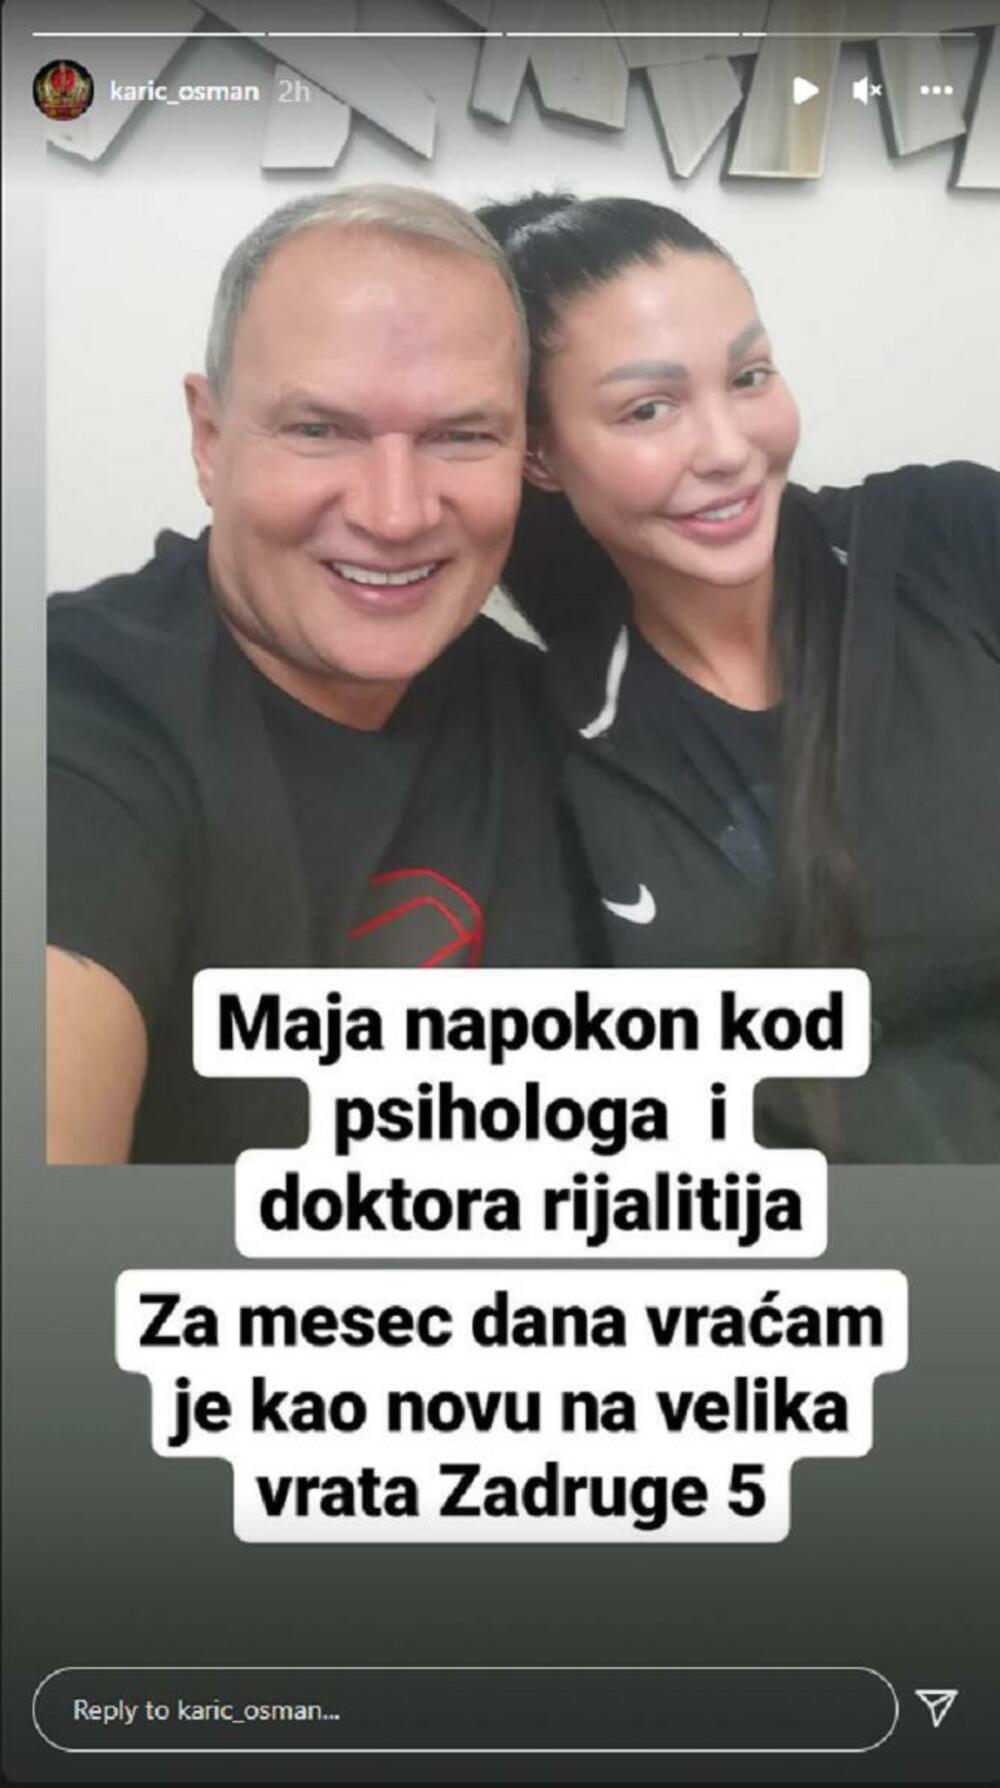 Maja Marinković, Osman Karić